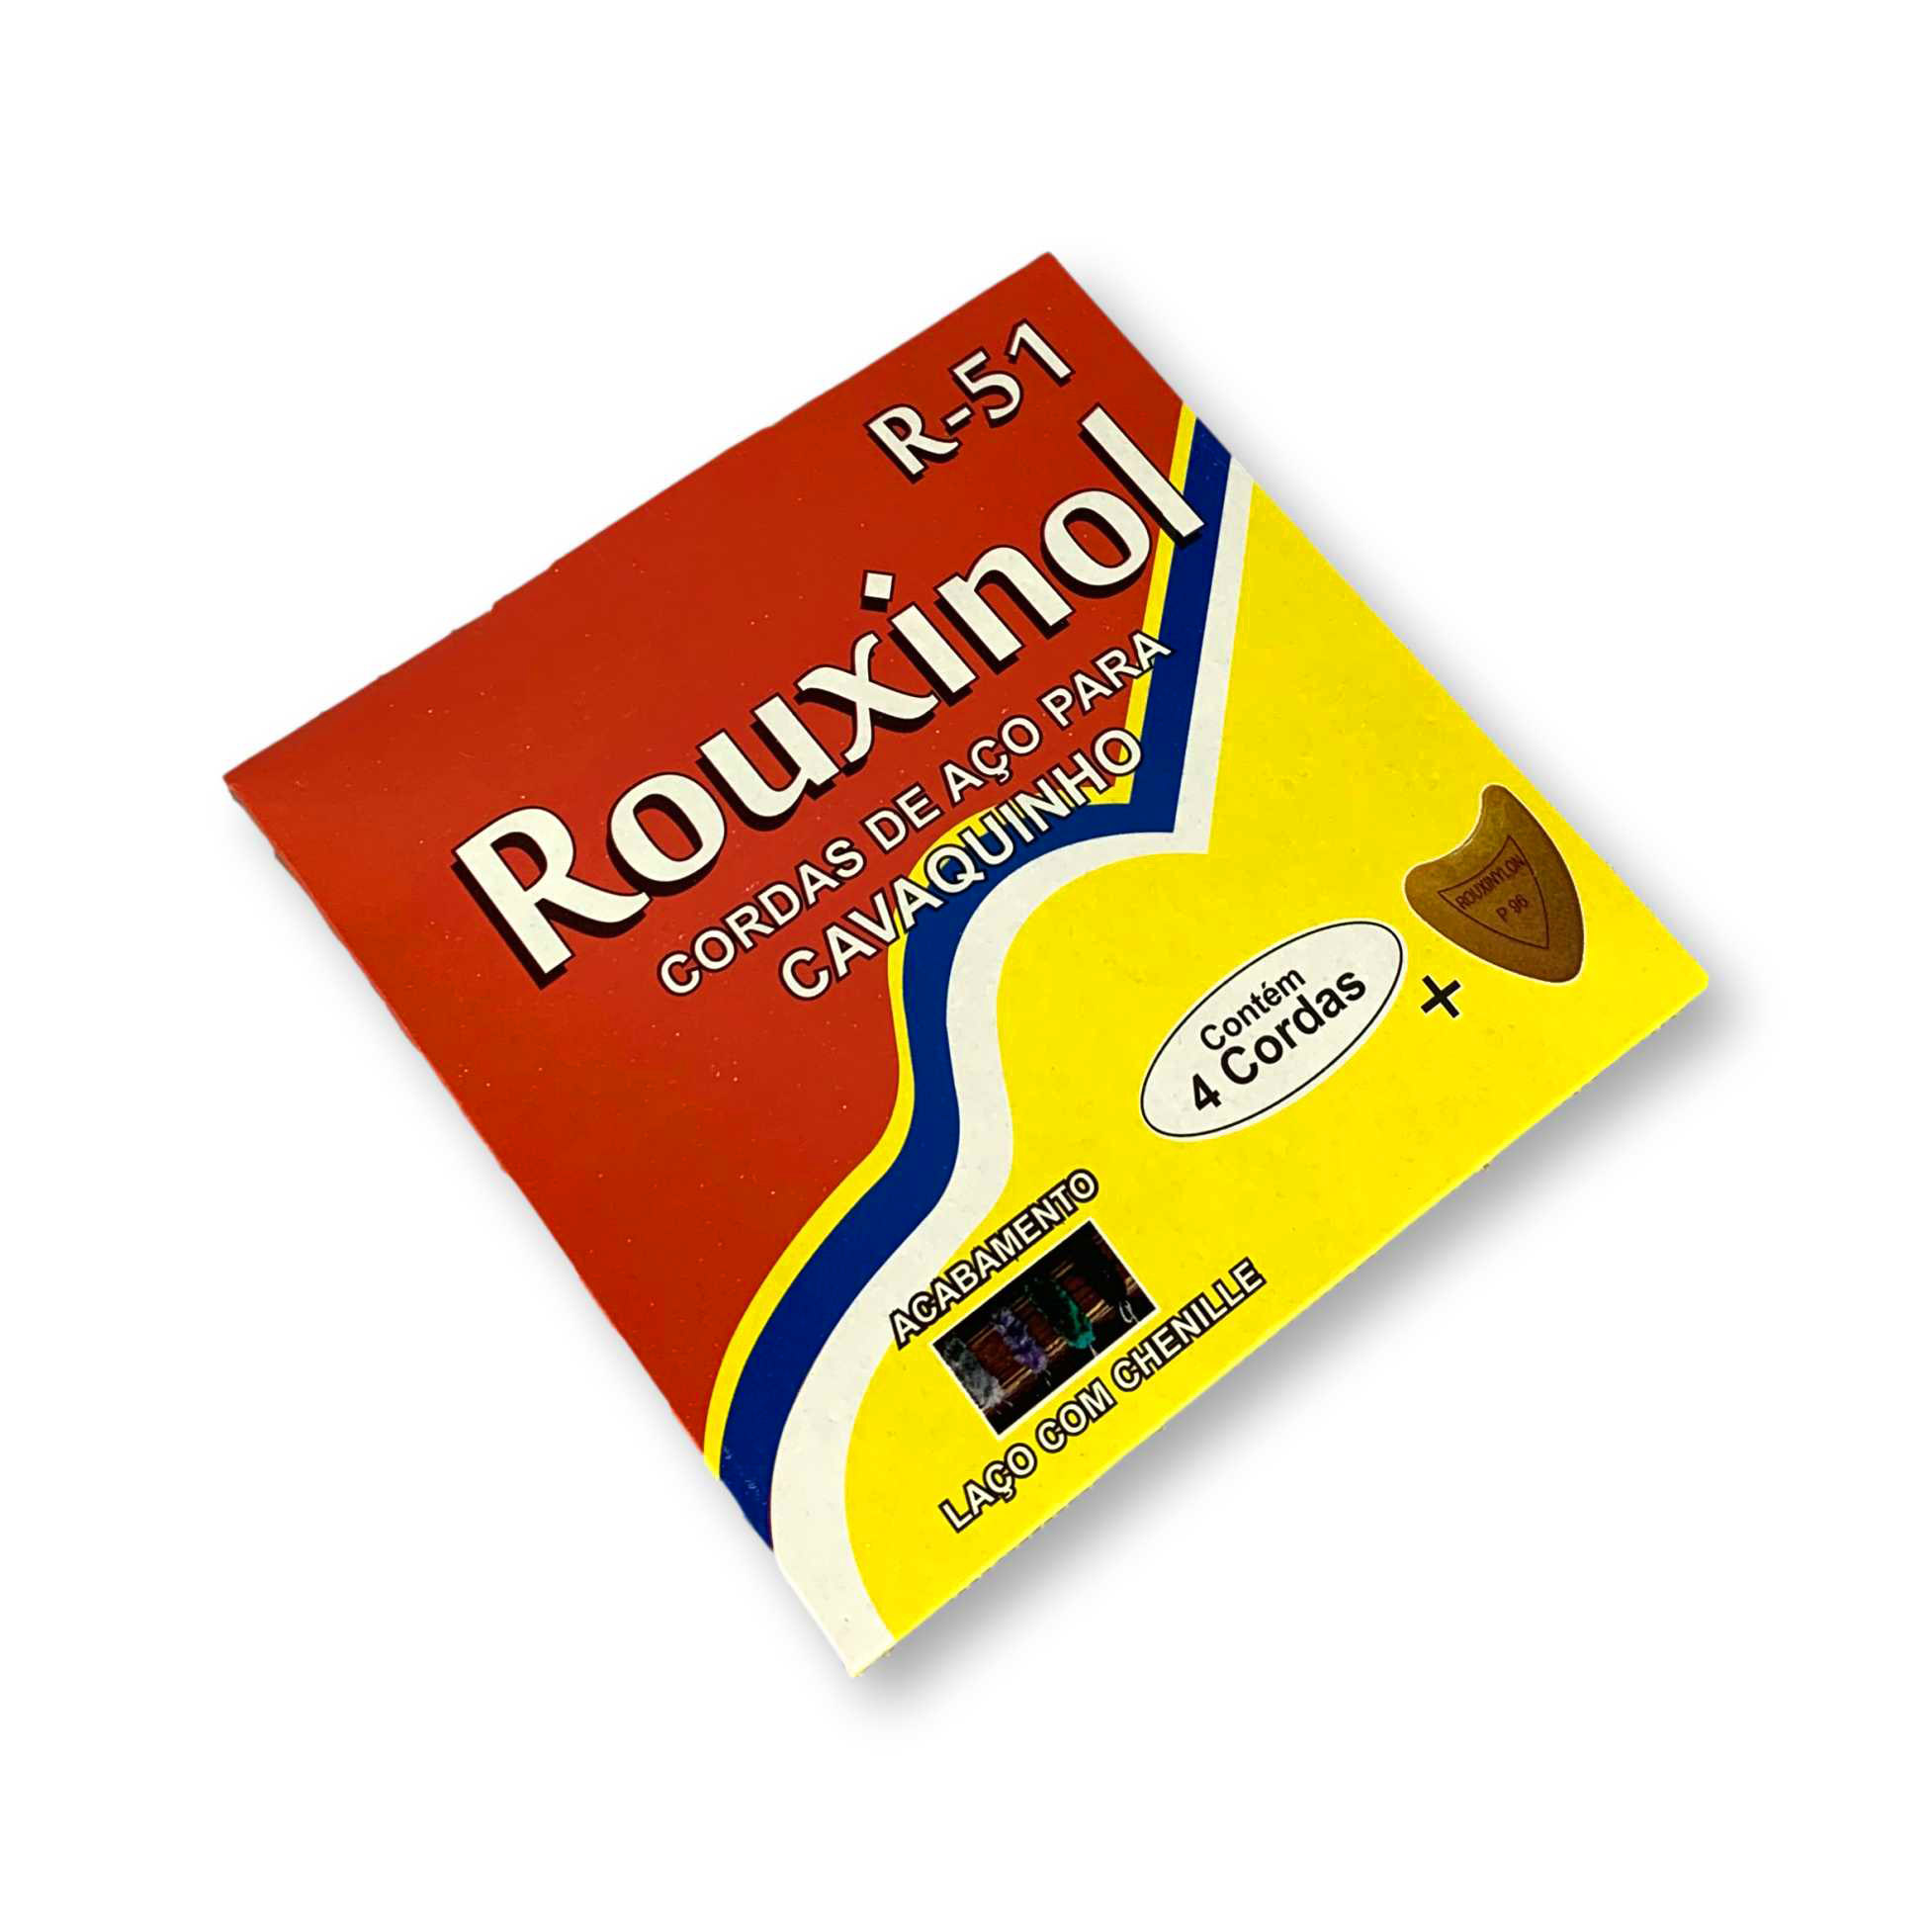 Encordoamento Cavaquinho Rouxinol R51